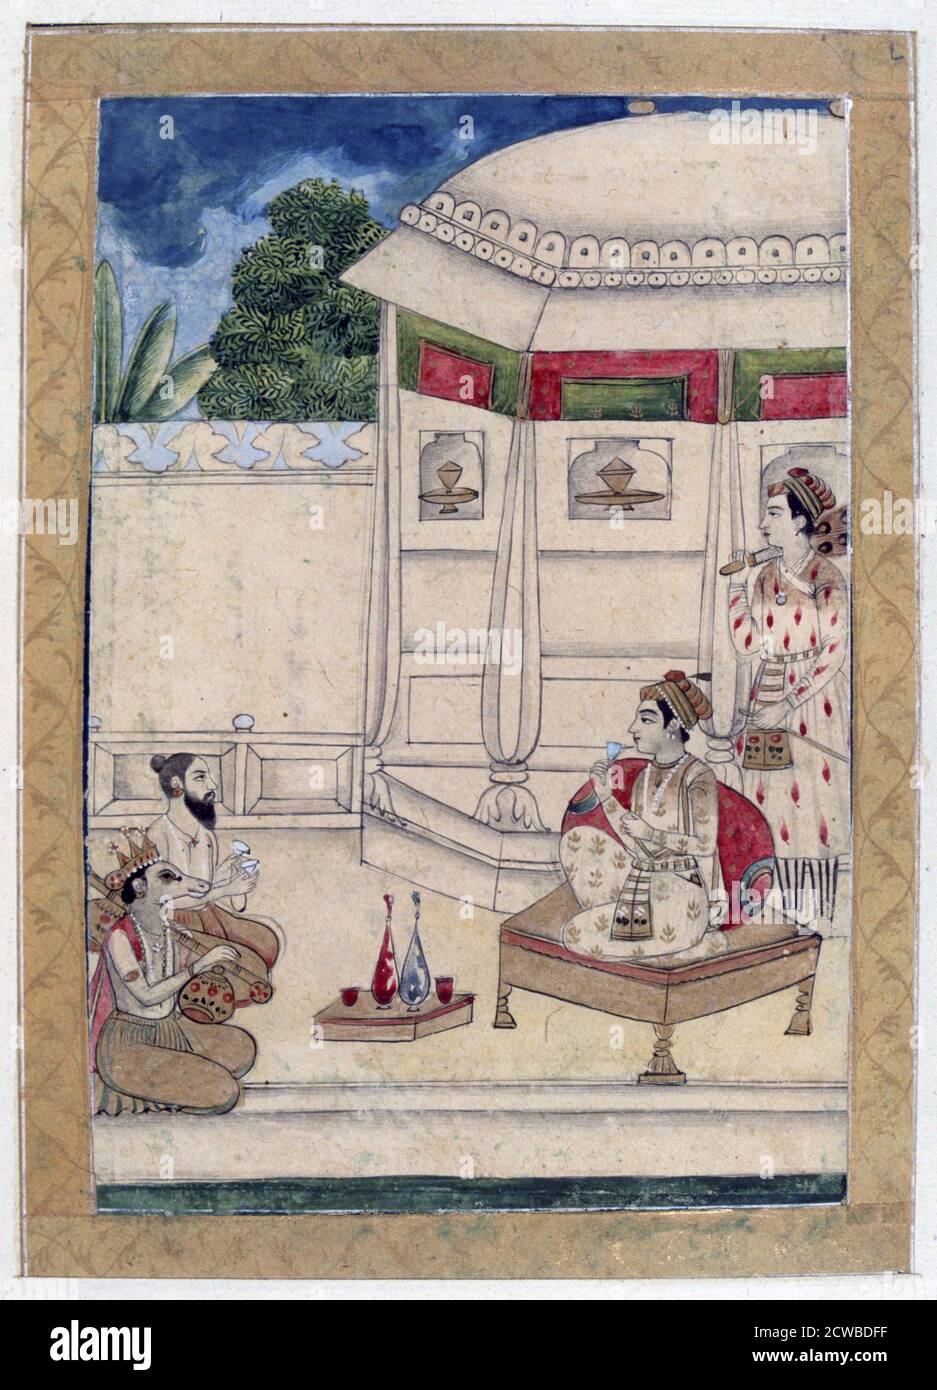 Sri Raga, Ragamala Album, School of Rajasthan, 19. Jahrhundert. Ein Prinz sitzt auf der Terrasse eines Hauses, wo Narada und Kinnara Musik spielen. Narada oder Narada Muni ist ein göttlicher Weise aus der hinduistischen Tradition. In der buddhistischen Mythologie und der hinduistischen Mythologie. Der Künstler ist unbekannt. Stockfoto